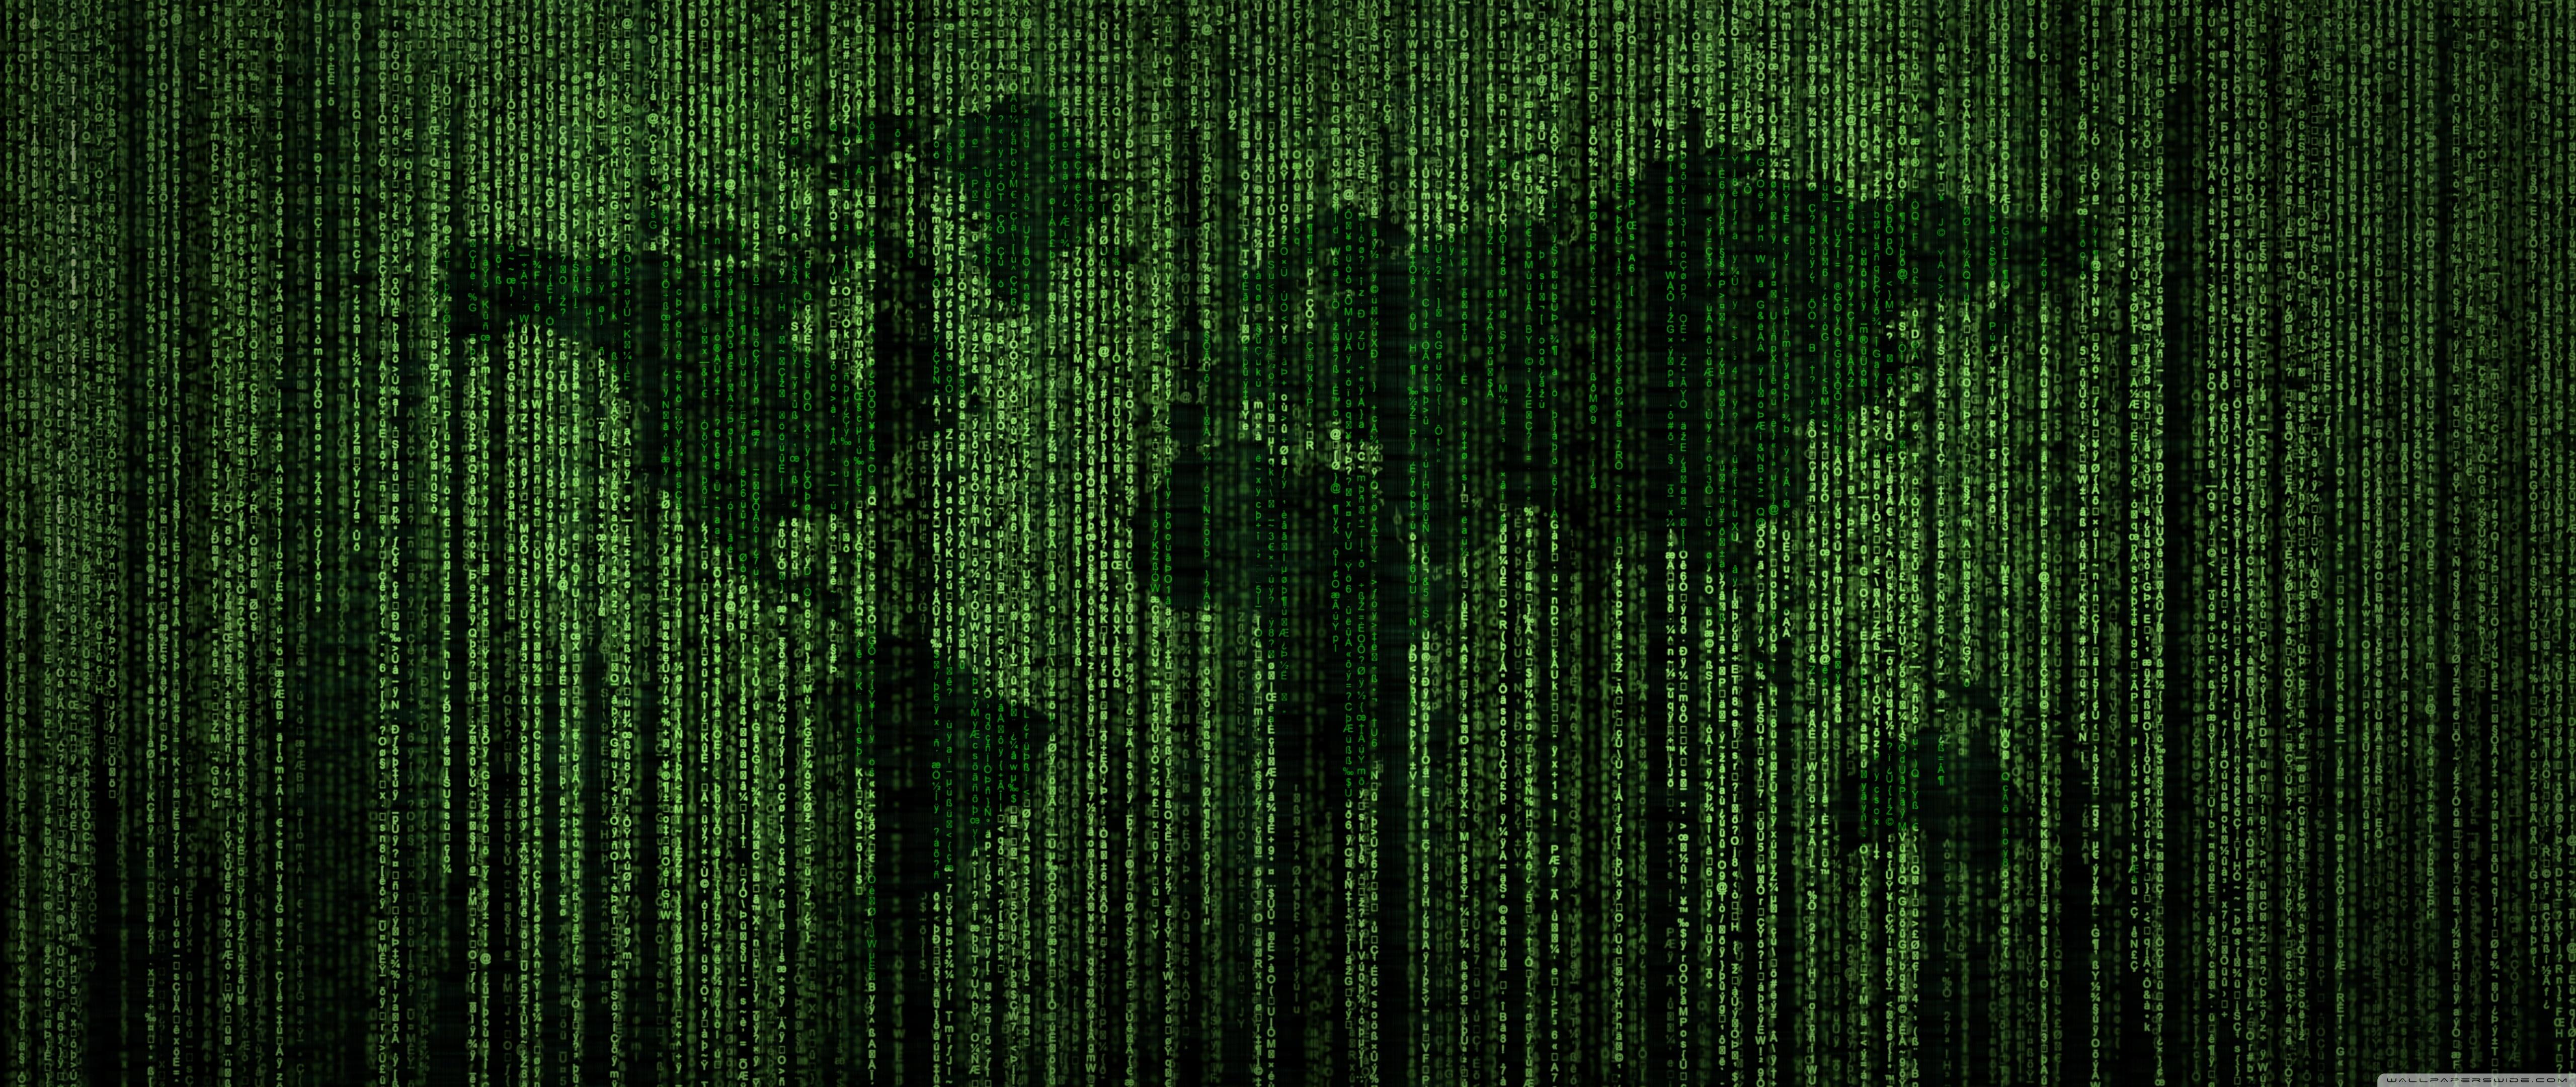 Green Matrix Code World Map ❤ 4K HD Desktop Wallpaper for 4K Ultra